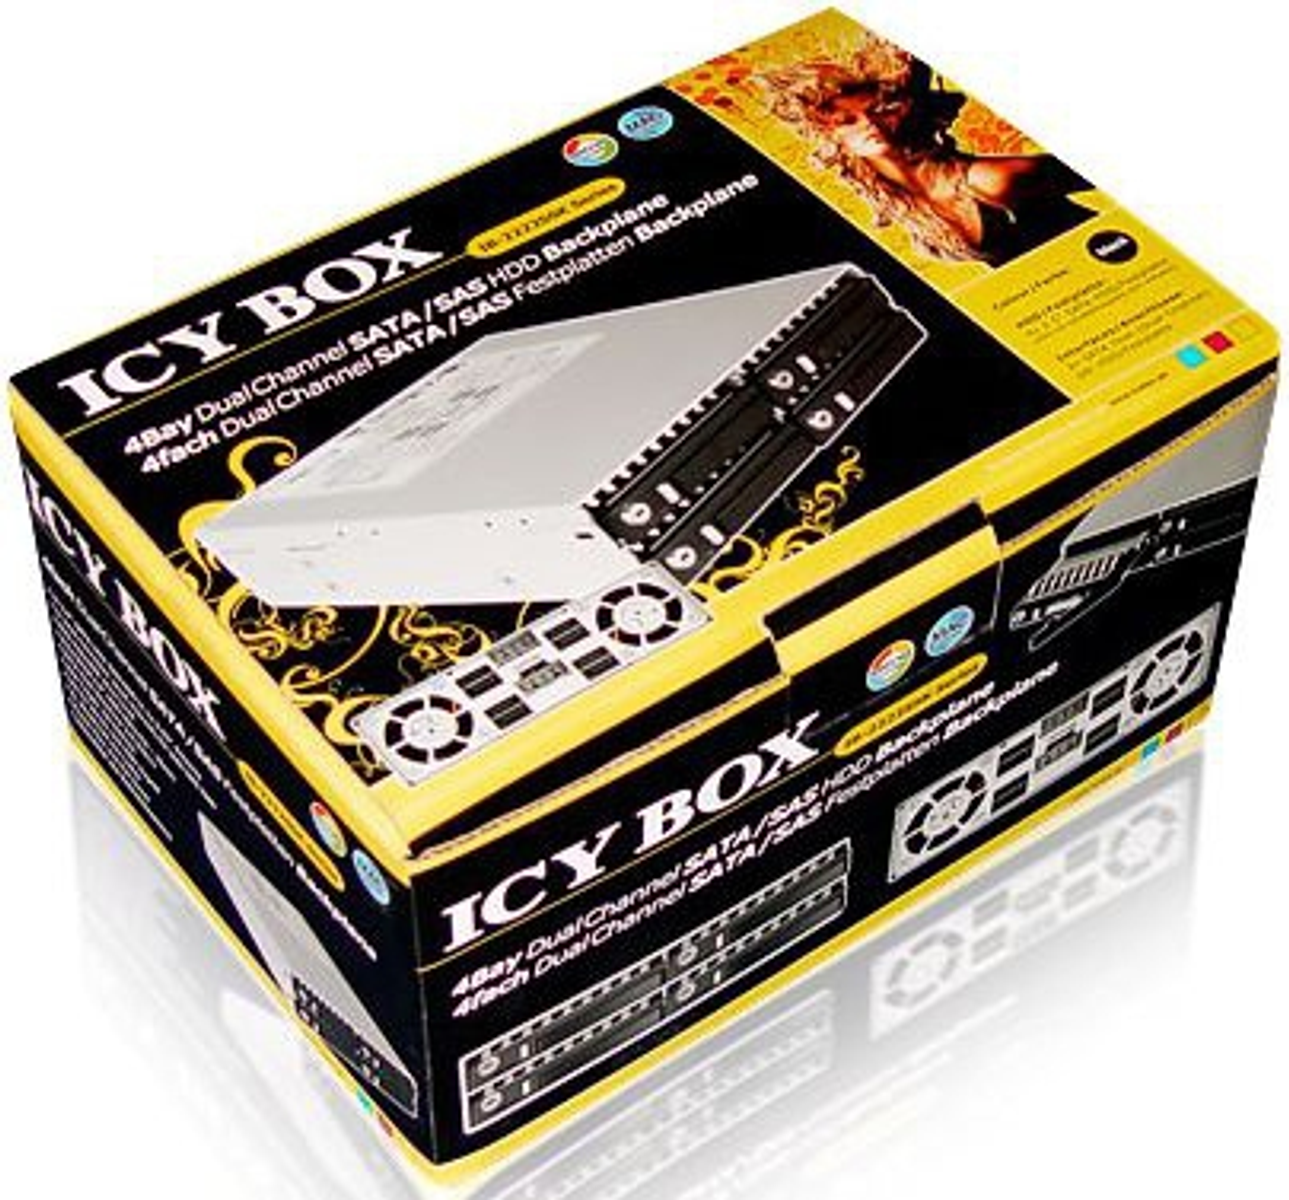 ICY BOX IB-2222SSK Festplattengehäuse & Schwarz -steckplätze